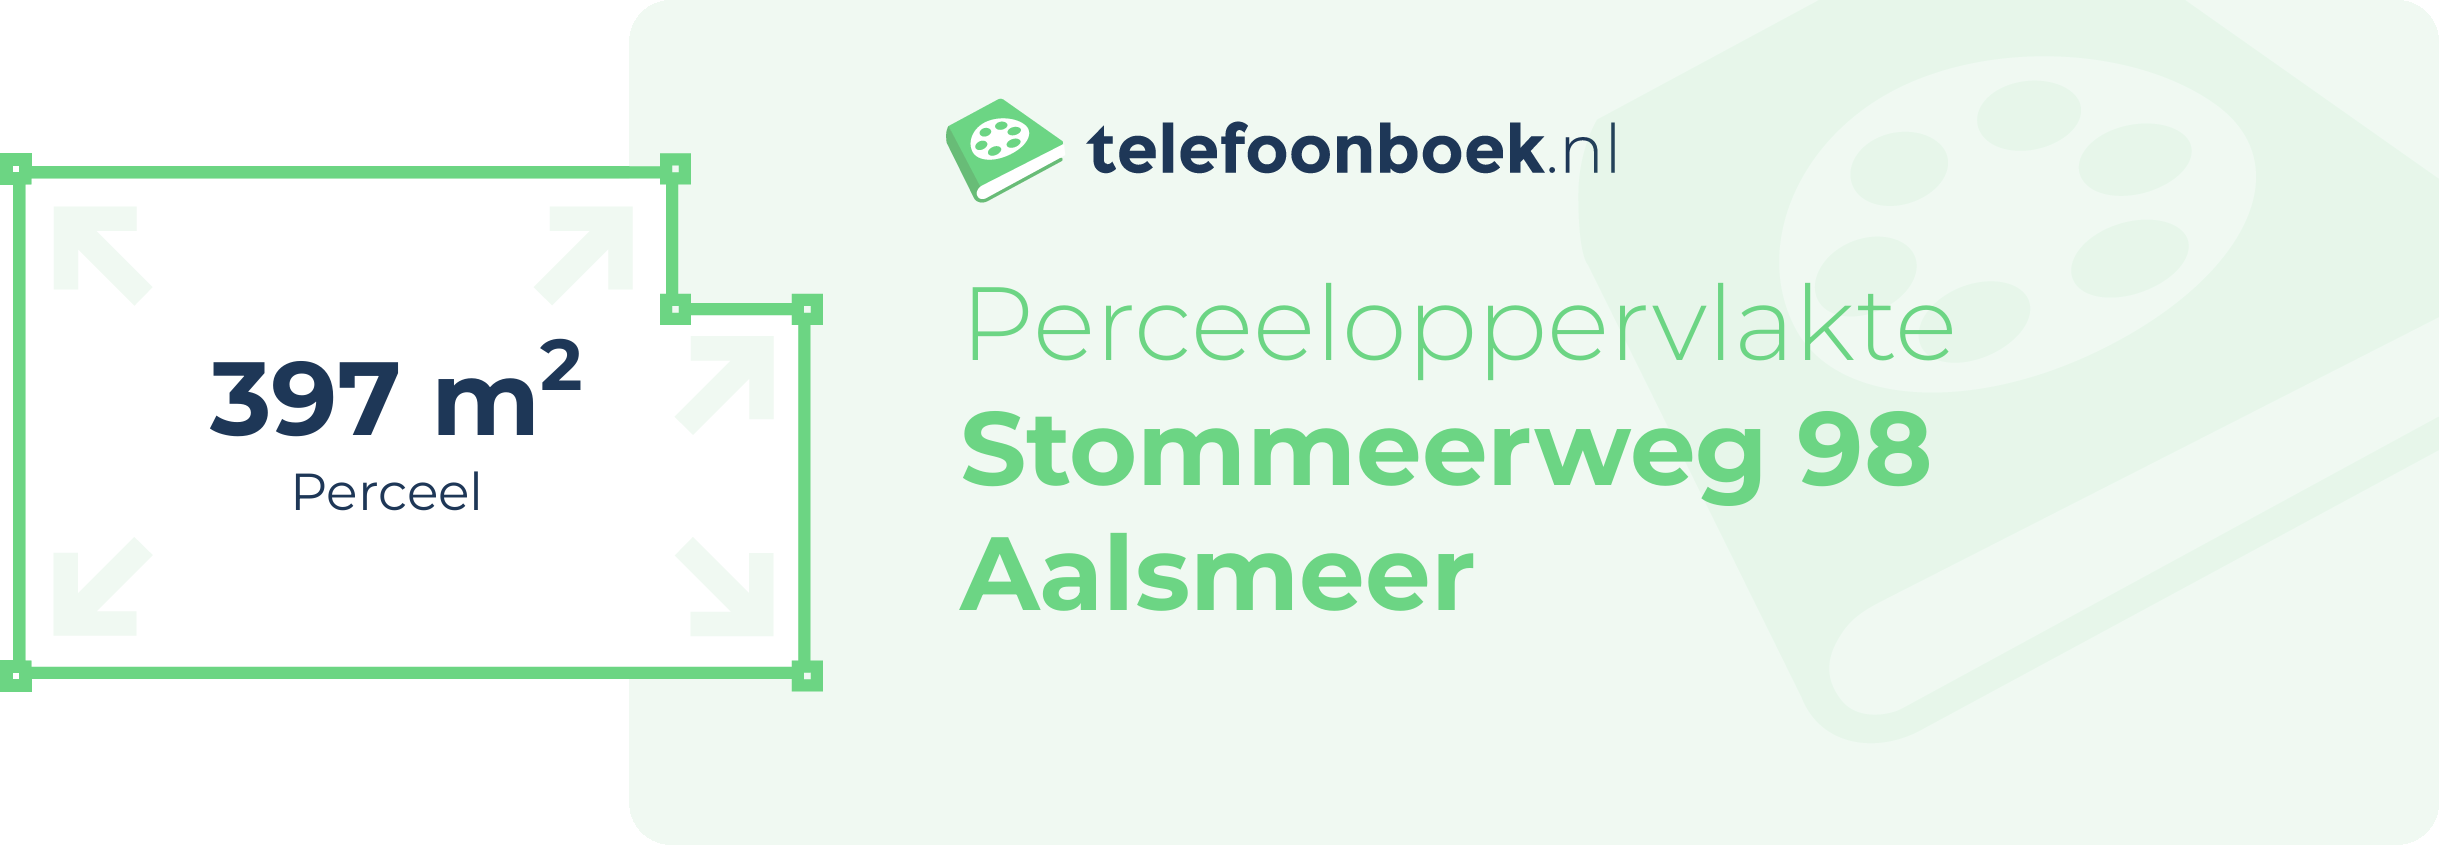 Perceeloppervlakte Stommeerweg 98 Aalsmeer